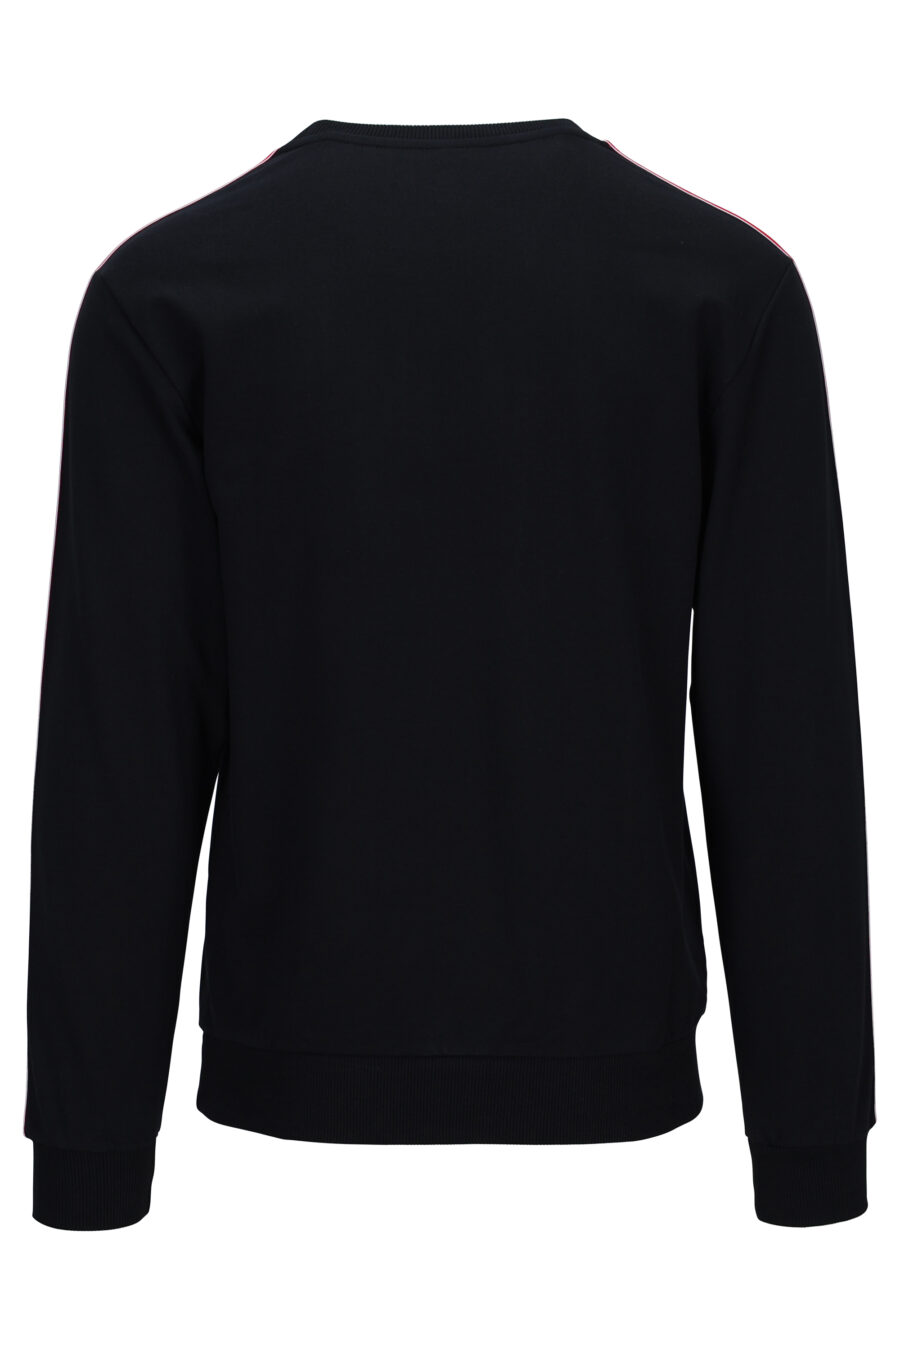 Schwarzes Sweatshirt mit Logoband an den Ärmelseiten - 667113028293 2